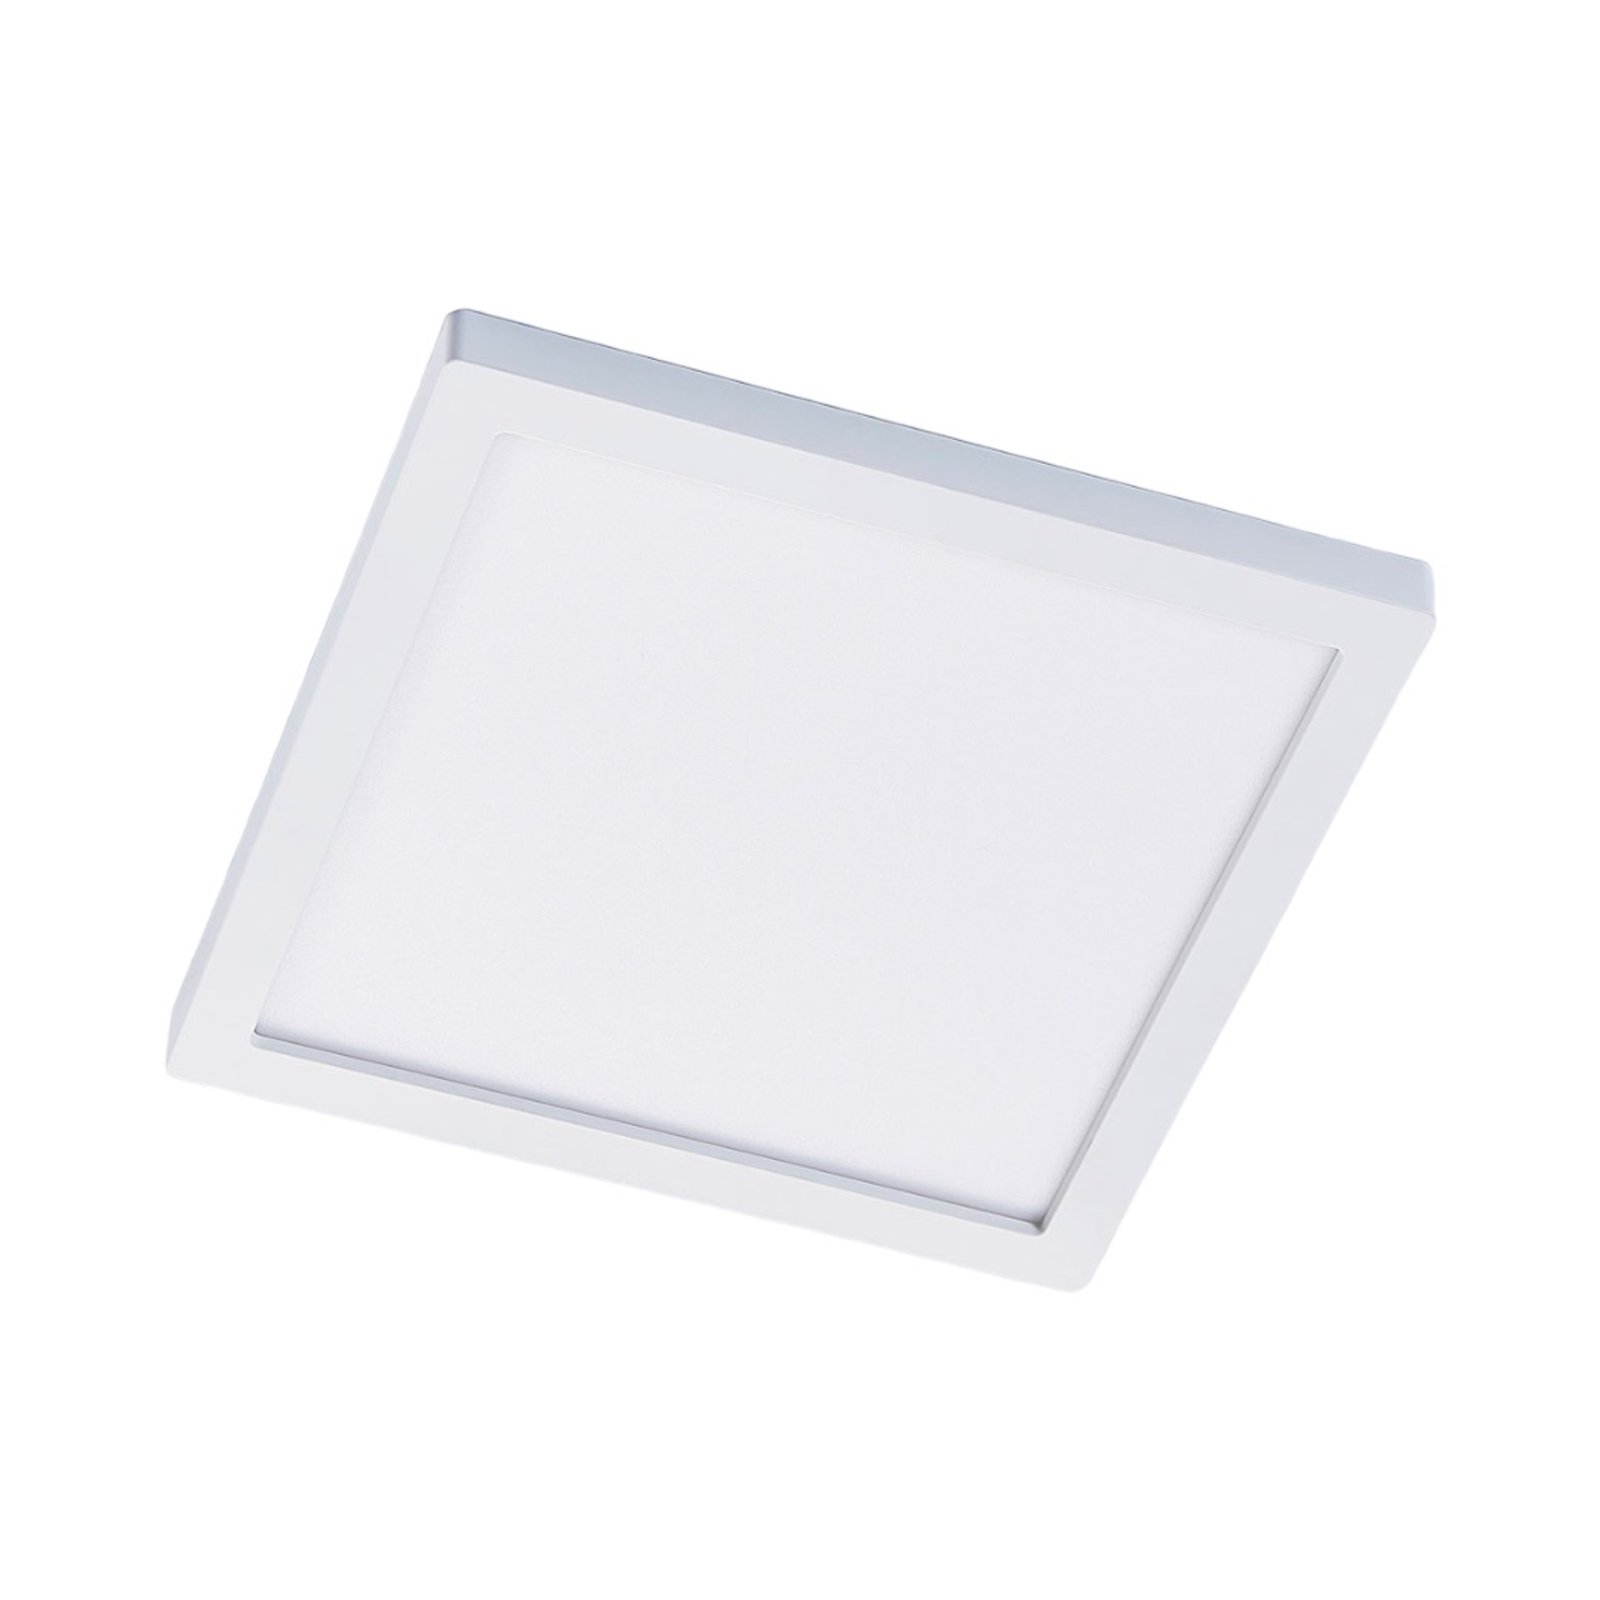 Solvie LED ceiling light, white, angular, 30 x 30 cm